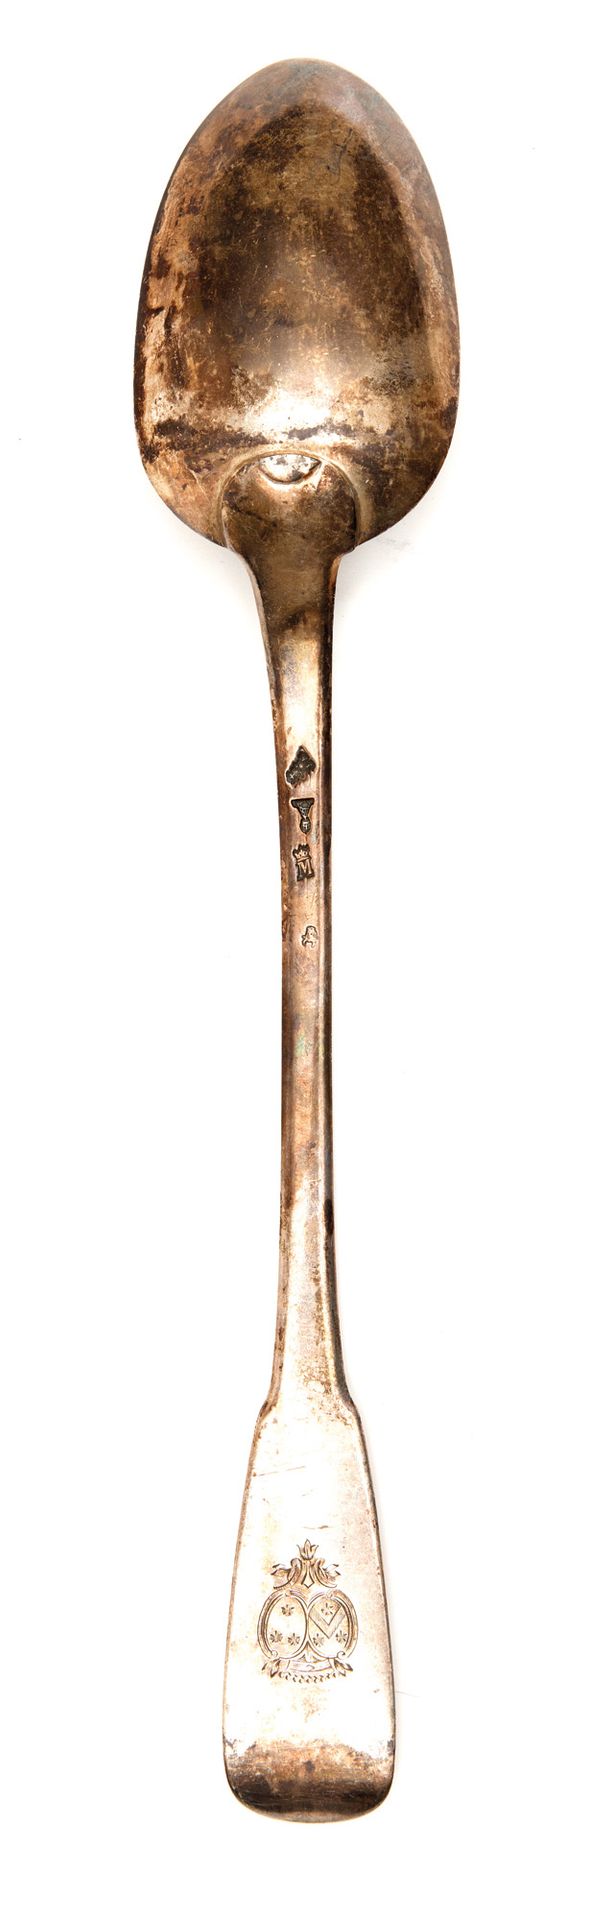 Cuillère à ragout en argent 银质炖汤匙

可能是Jacques Anthiaume的作品，巴黎，1775年

一体式模型，刻有伯爵冠&hellip;